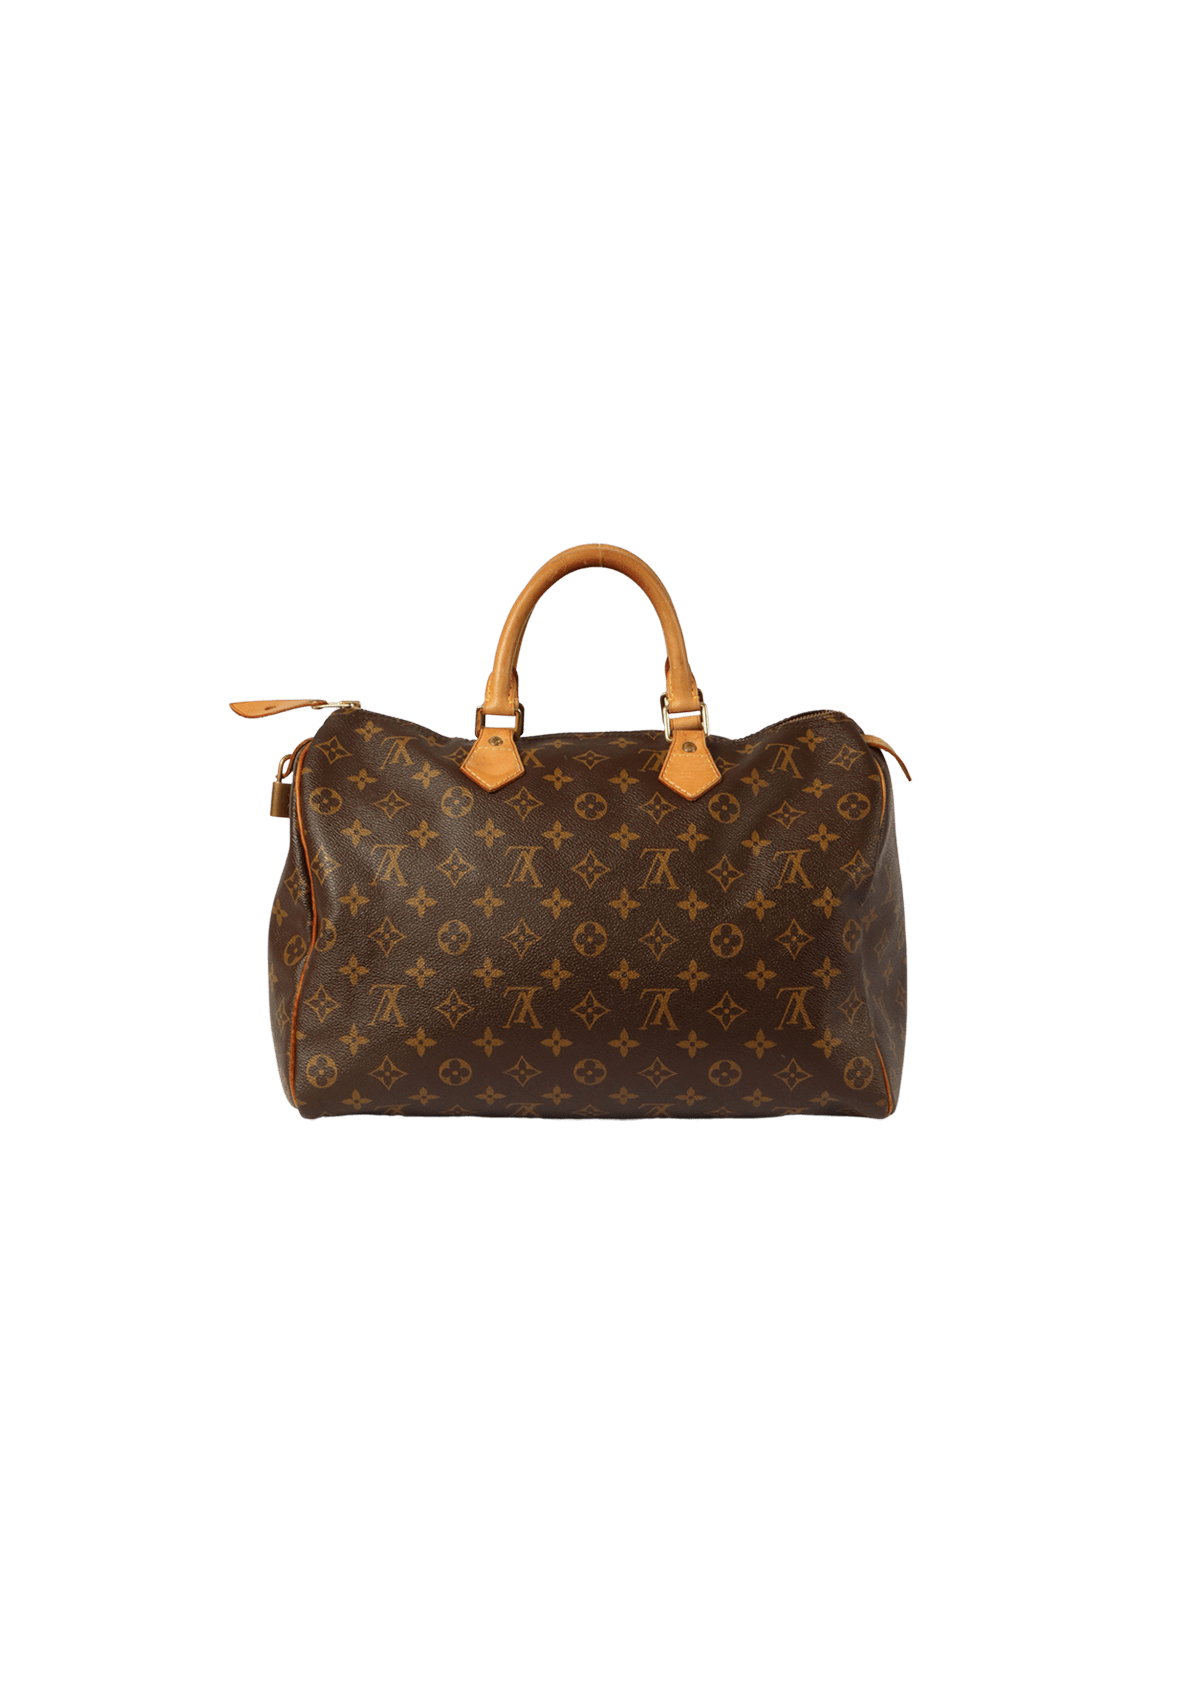 Bolsa-Louis-Vuitton-Monogram-Speedy-35-Marrom-Original-21224f.png?v=1660136936